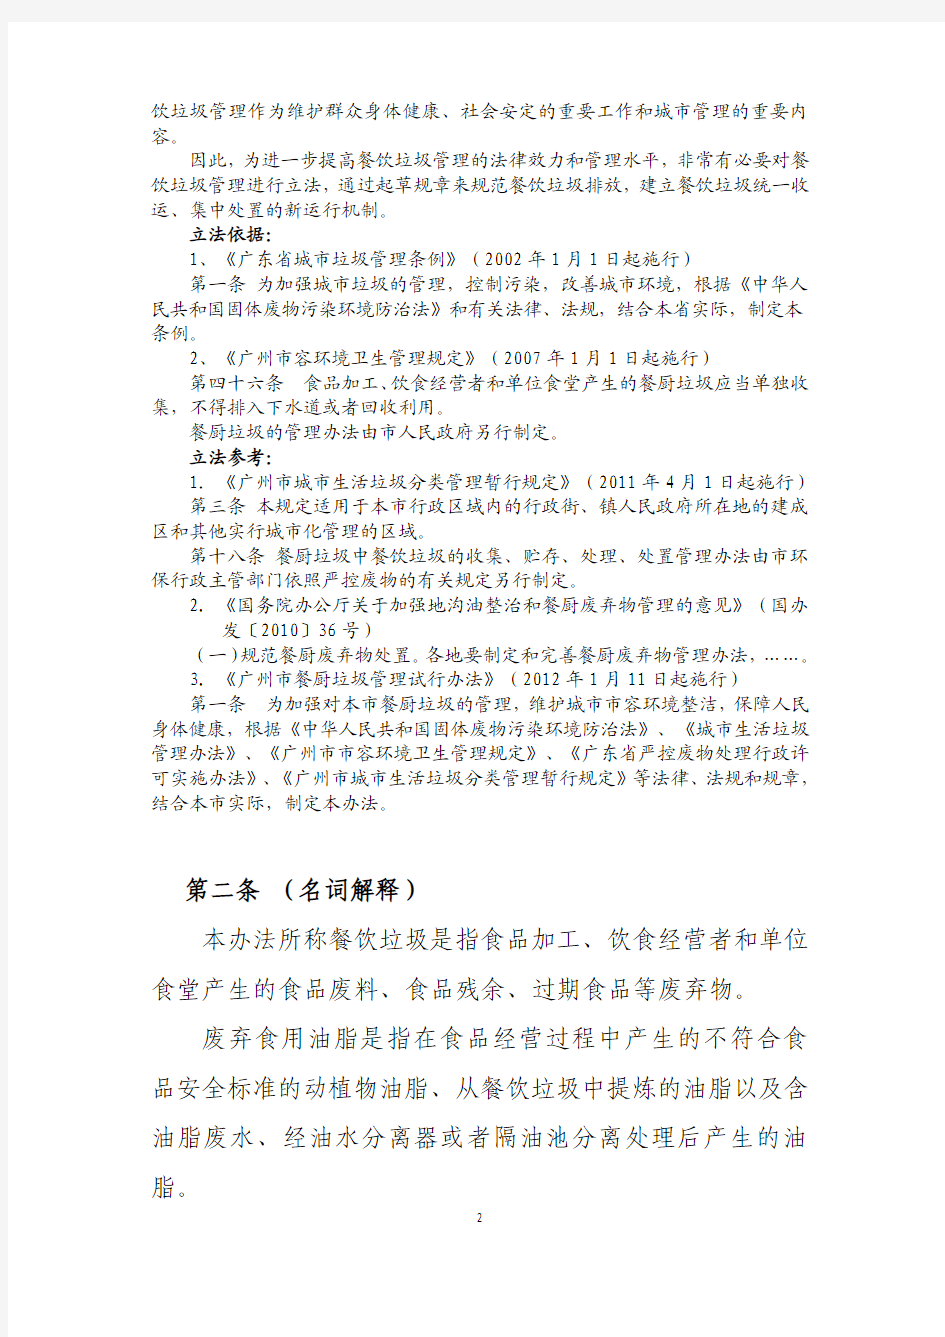 广州市餐饮垃圾和废弃食用油脂管理办法(征求意见稿注释稿)及其起草说明